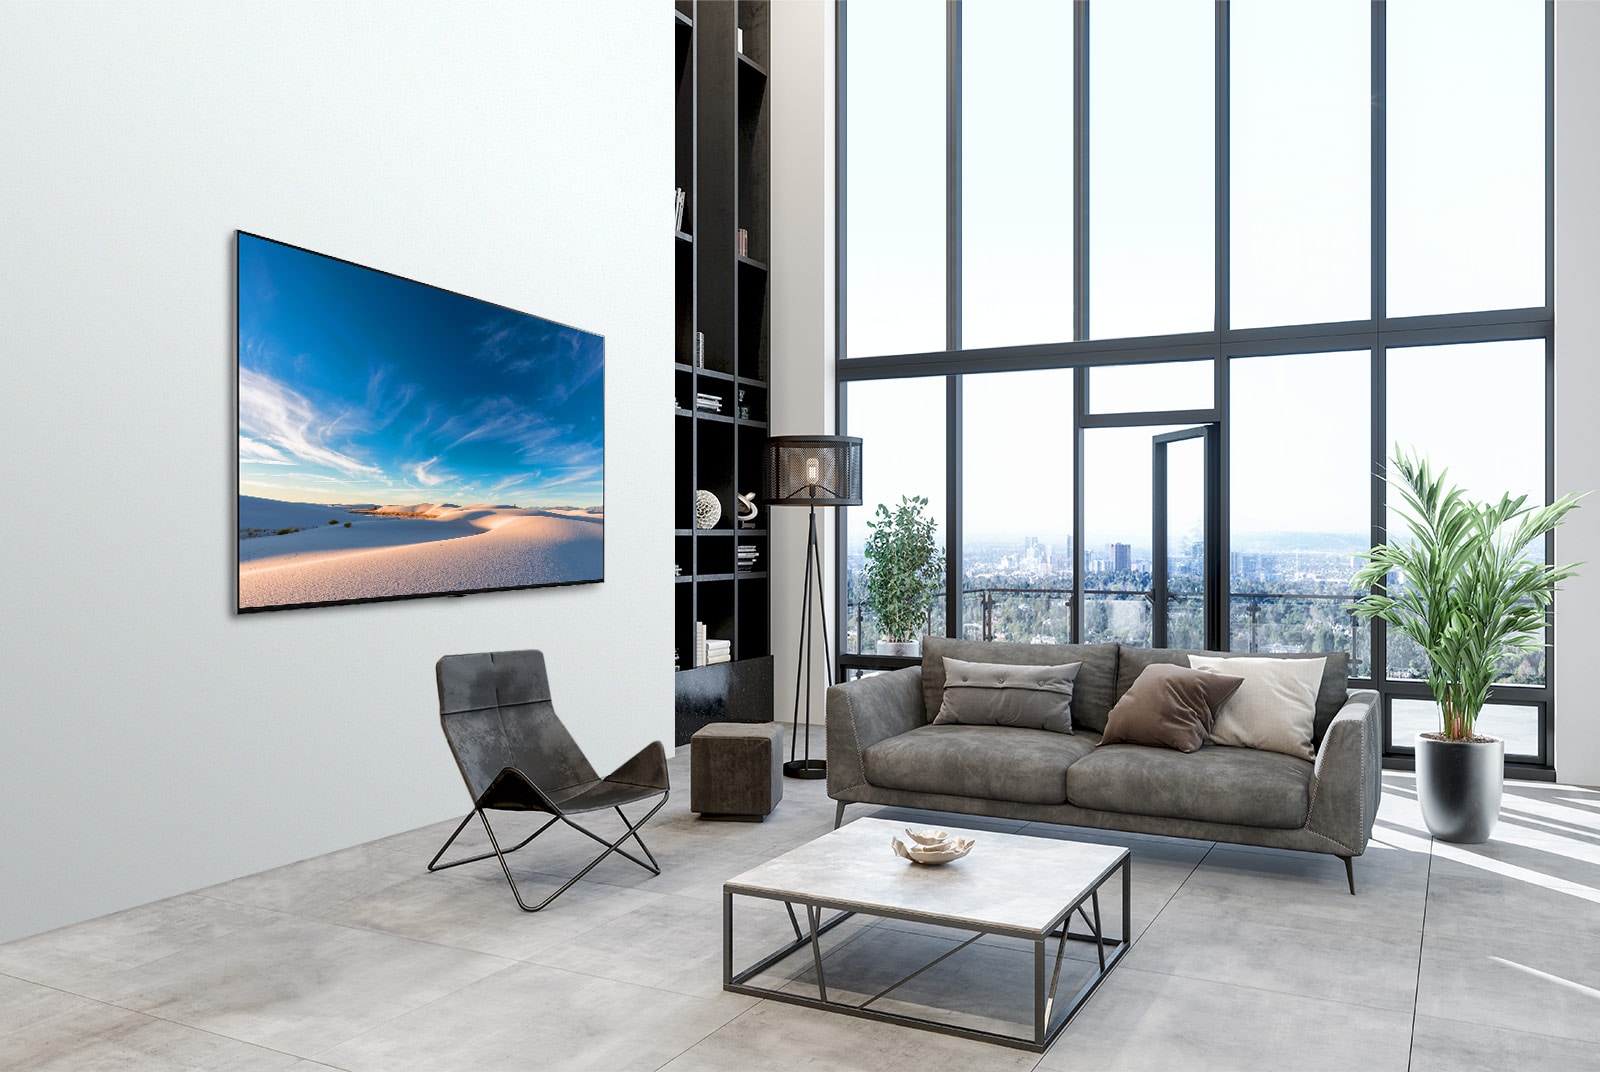 LG QNED TV falra szerelve, ahogy a modern berendezésű helyiség falának síkjára illeszkedik.